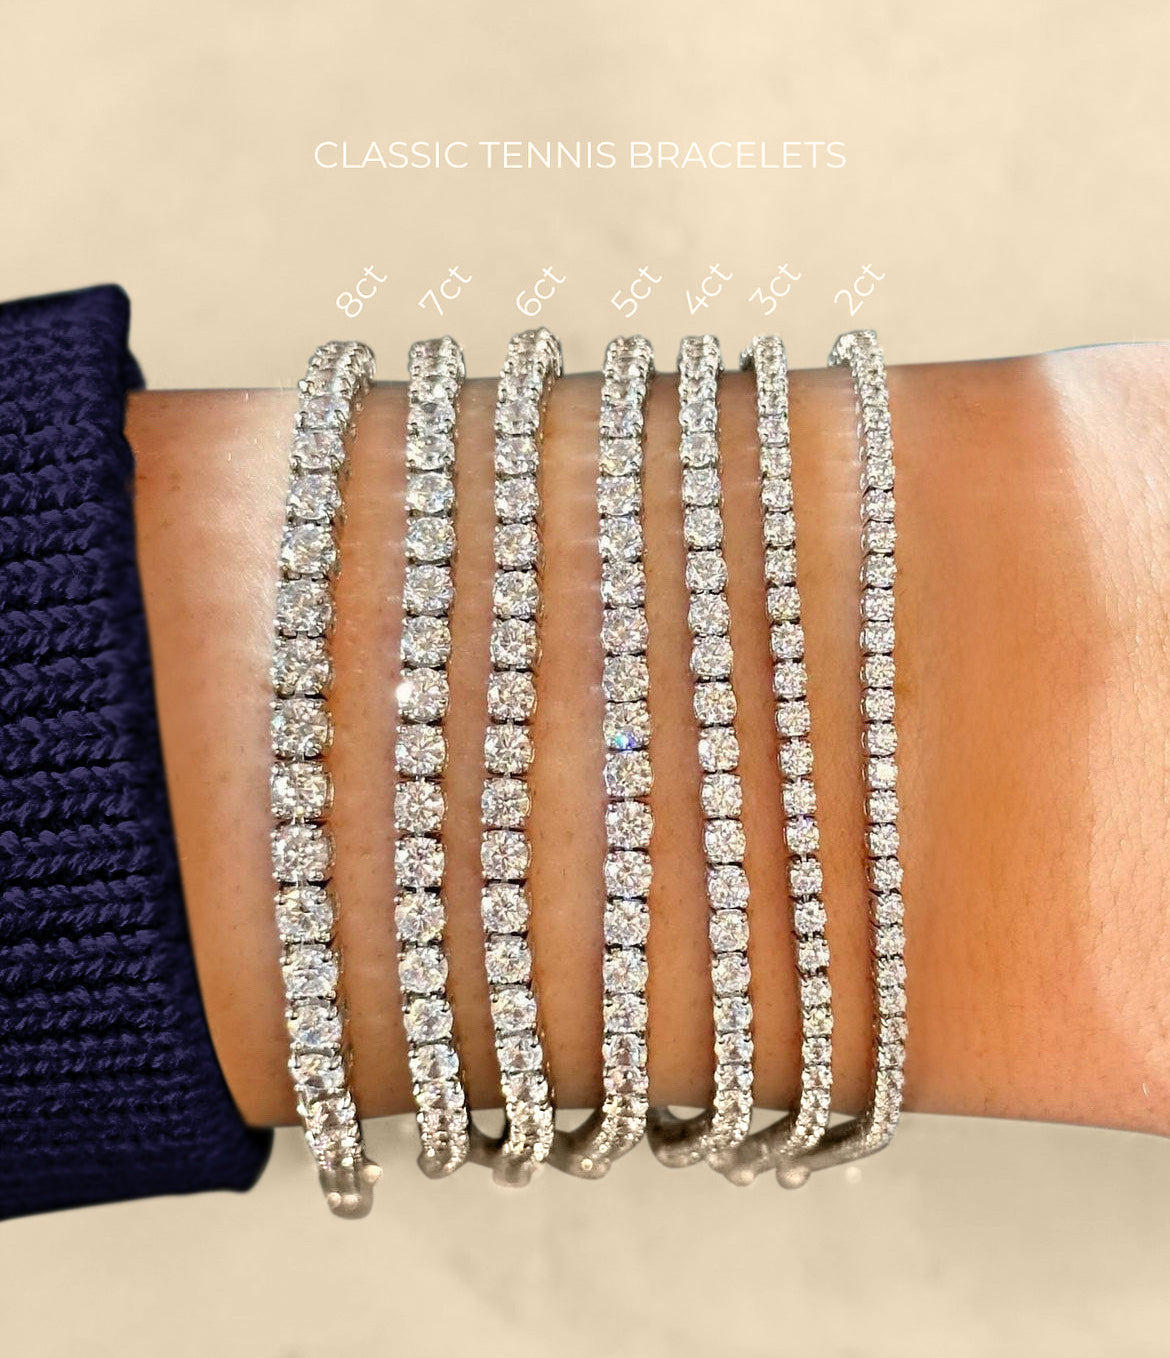 The Claire 2.00ct Tennis Bracelet